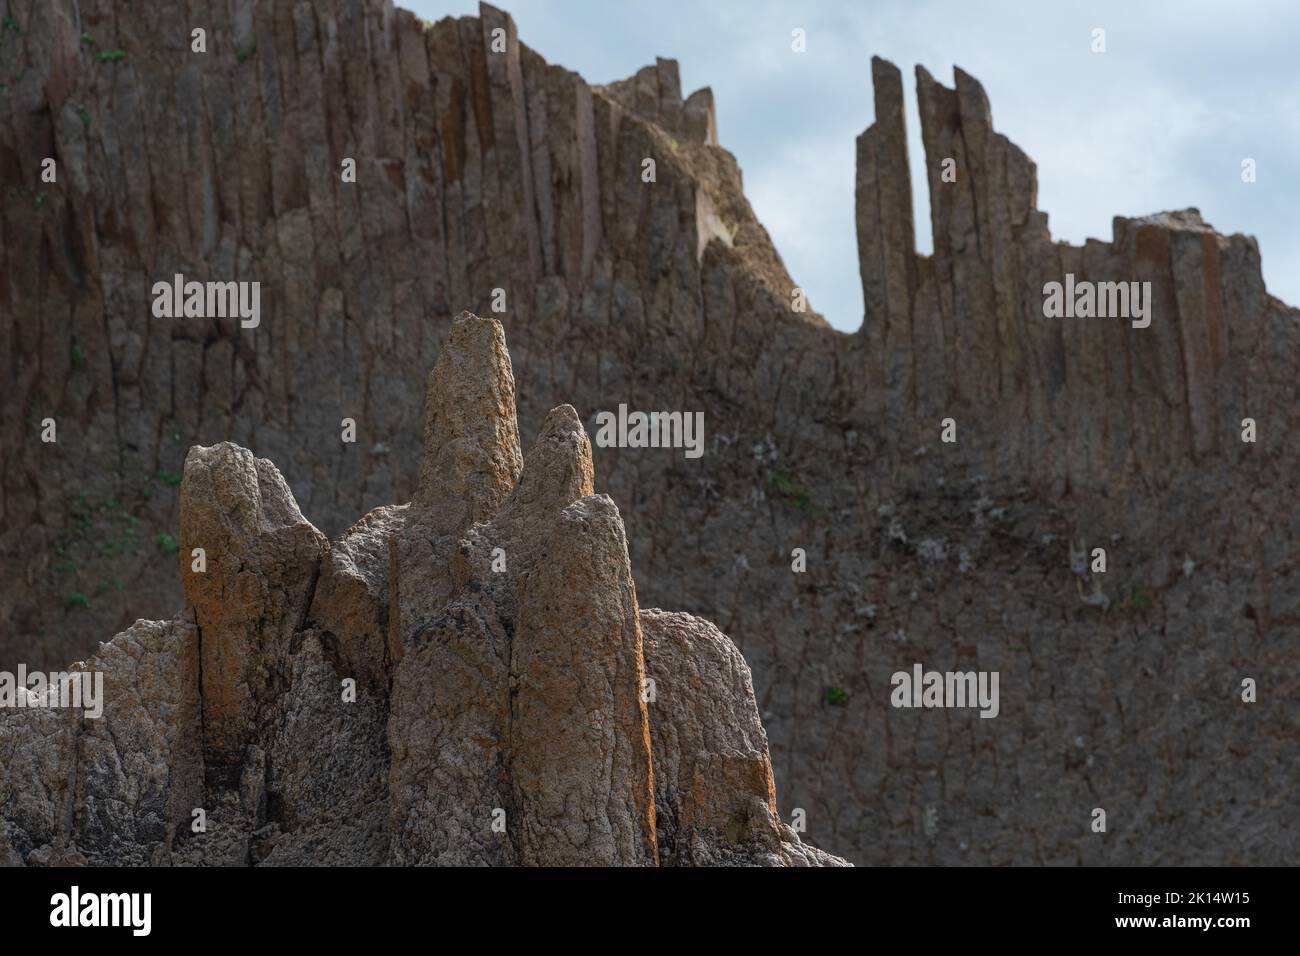 paesaggio vulcanico naturale, cime di rocce frastagliate formate da basalto colonnare Foto Stock